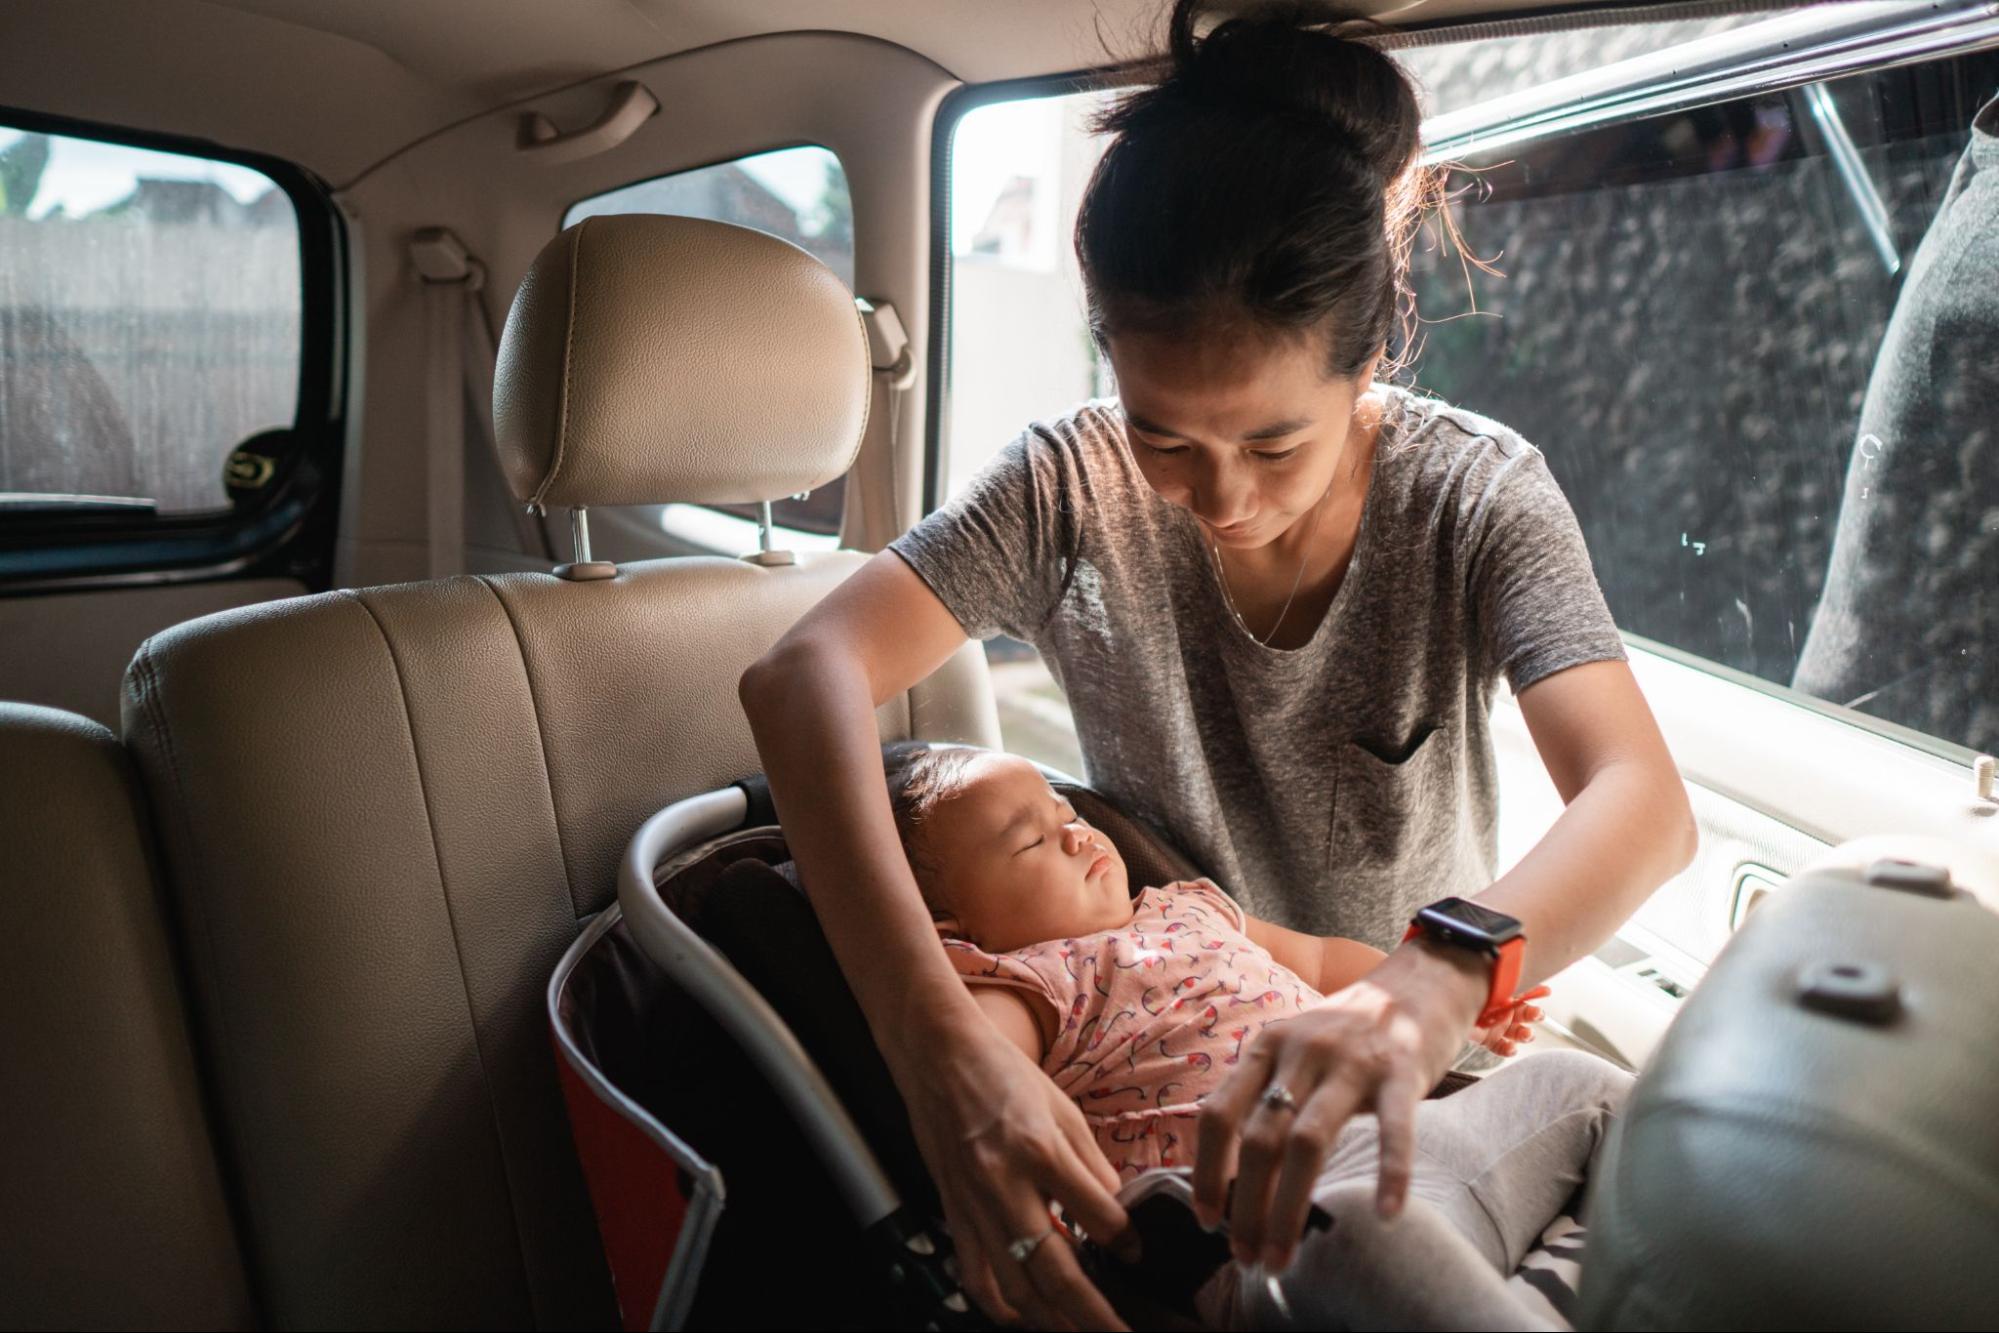 uma mulher está em pé ao lado do carro que tem sua porta aberta. No banco traseiro está uma cadeirinha bebe conforto com um bebê. A mulher está acertando as configurações da cadeirinha para o bebê.